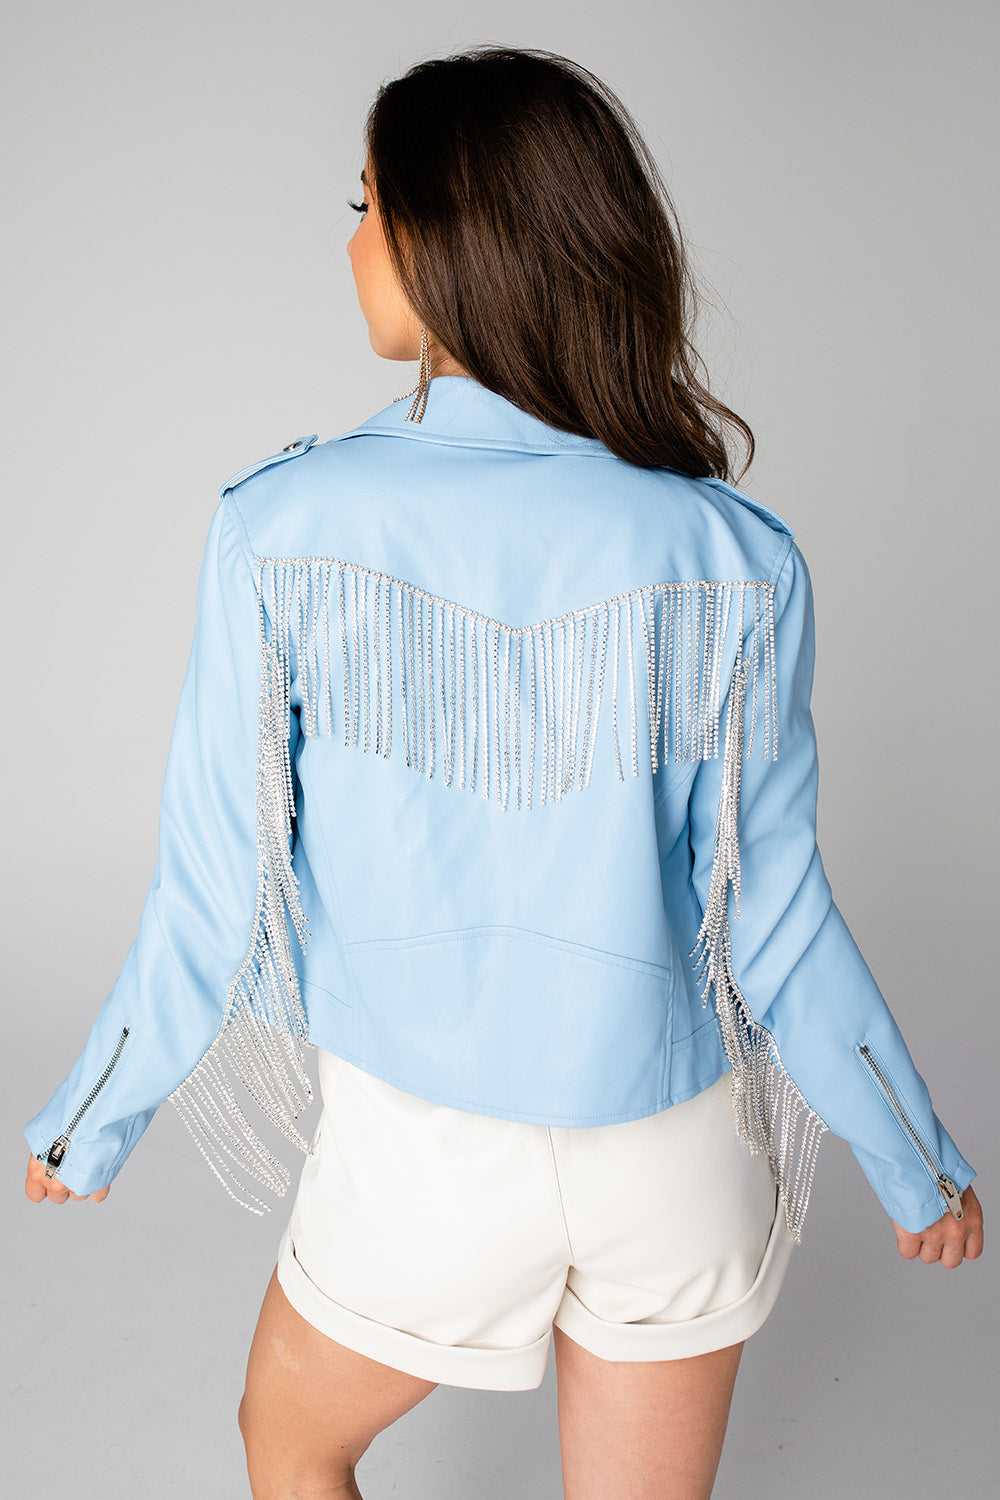 Blue B Rhinestone Fringe Denim Jacket - Women's Coats/Jackets in Off White